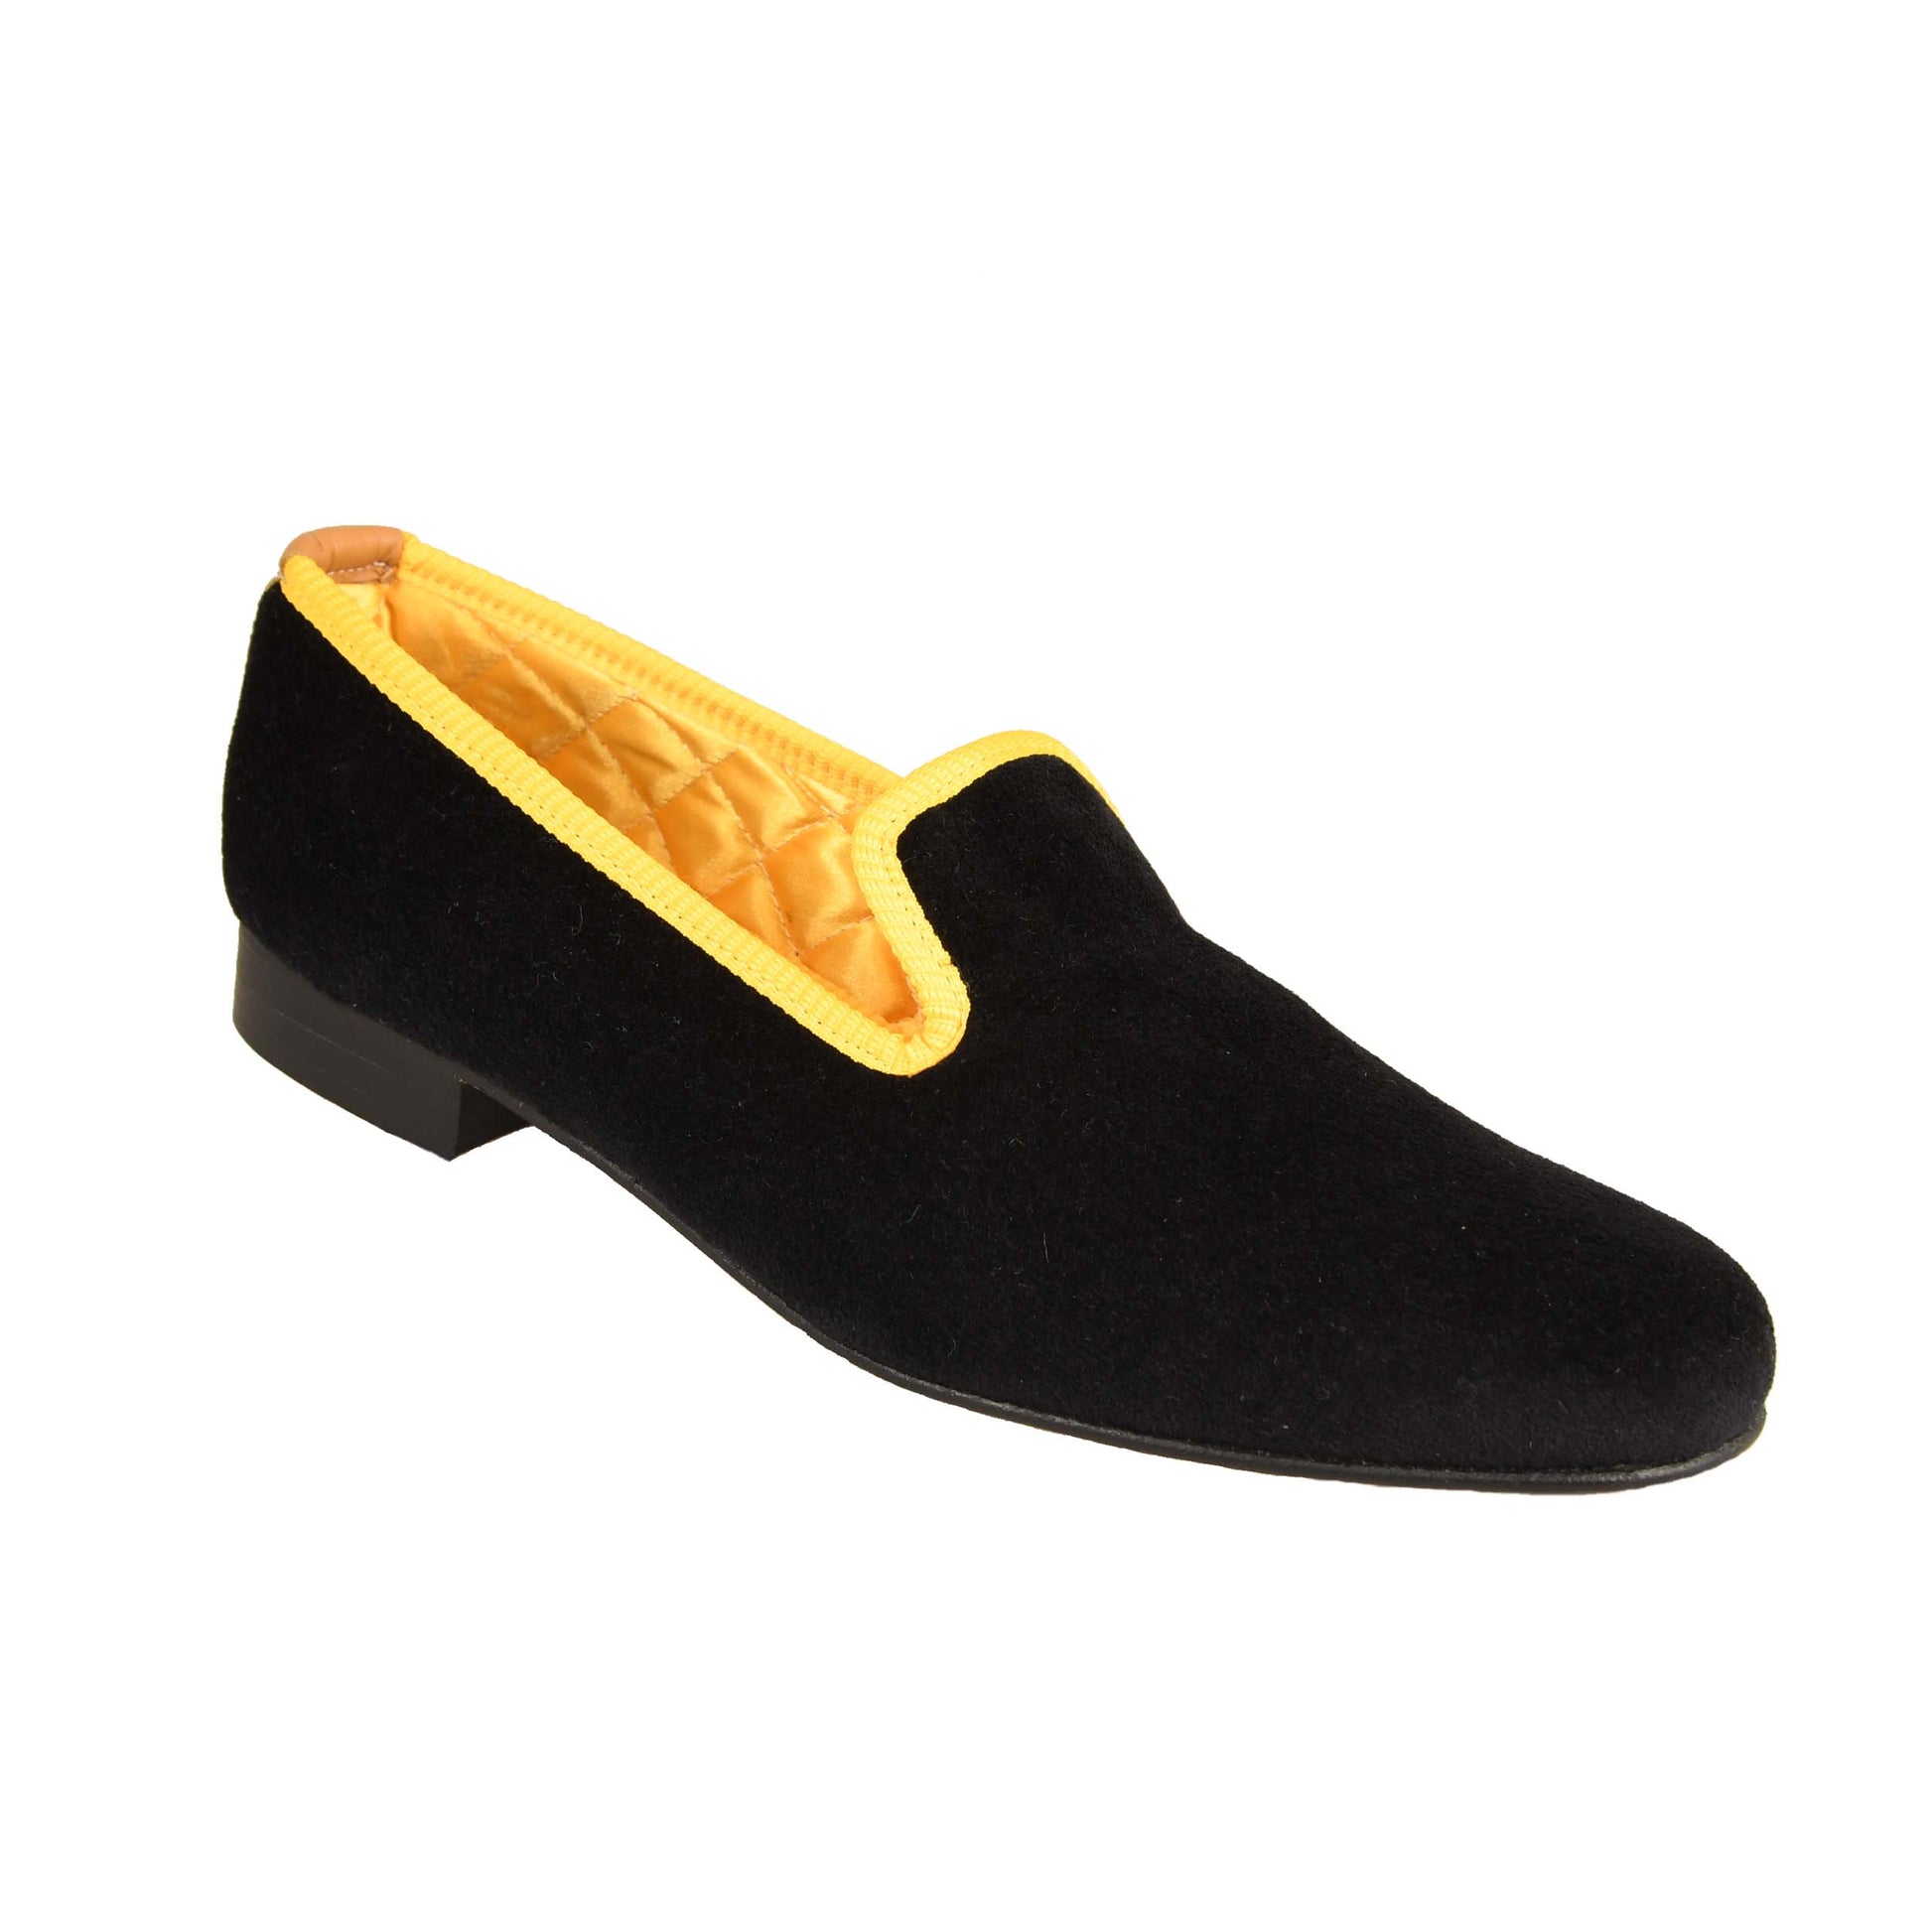 Tofflor i svart sammet med gul kant från Bowhill & Eliott med lädersula